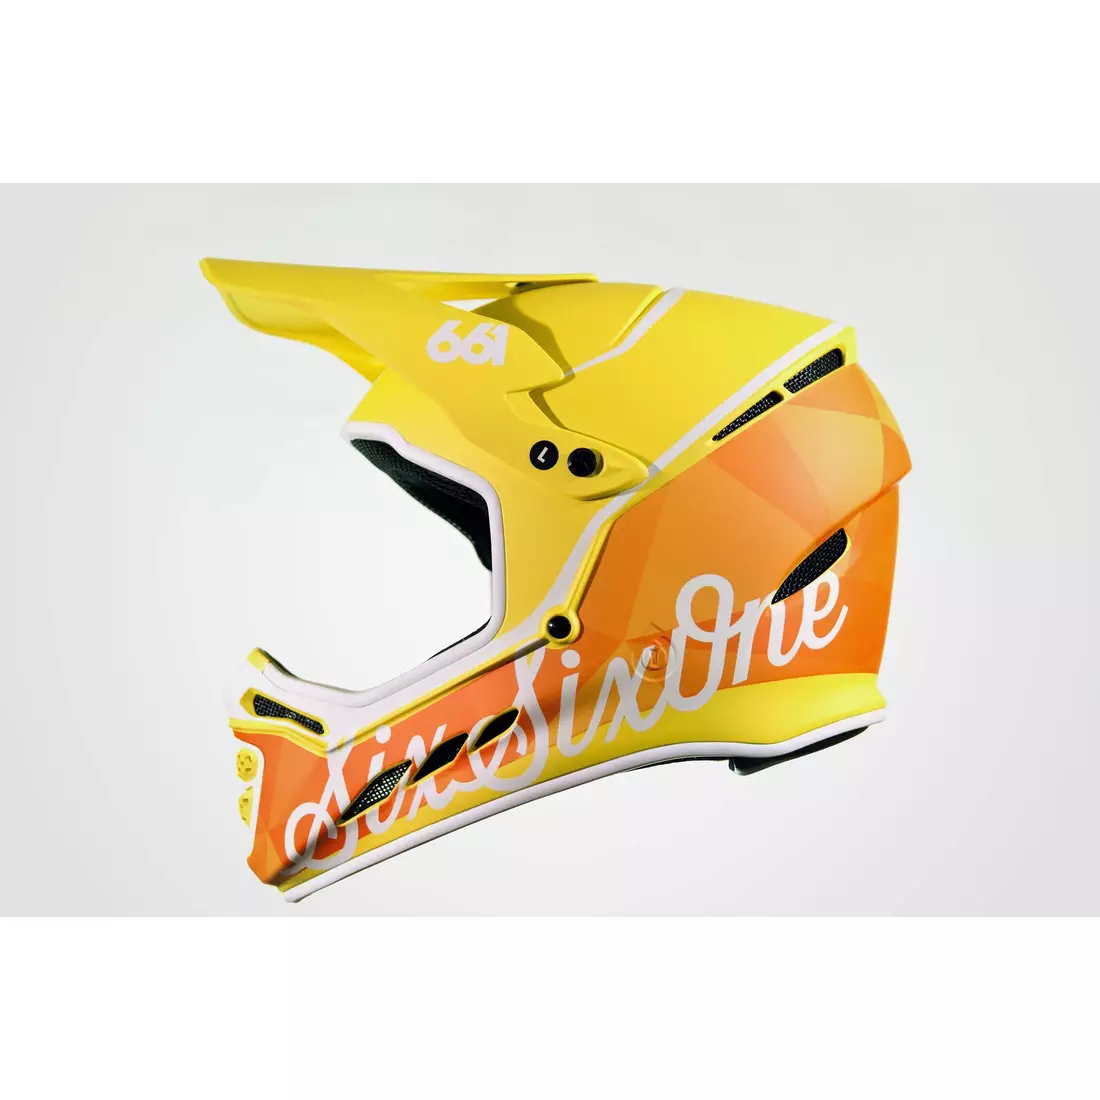 SisSixOne 661 RESET GEO CITRUS Cască de bicicletă  fullface galben-portocaliu